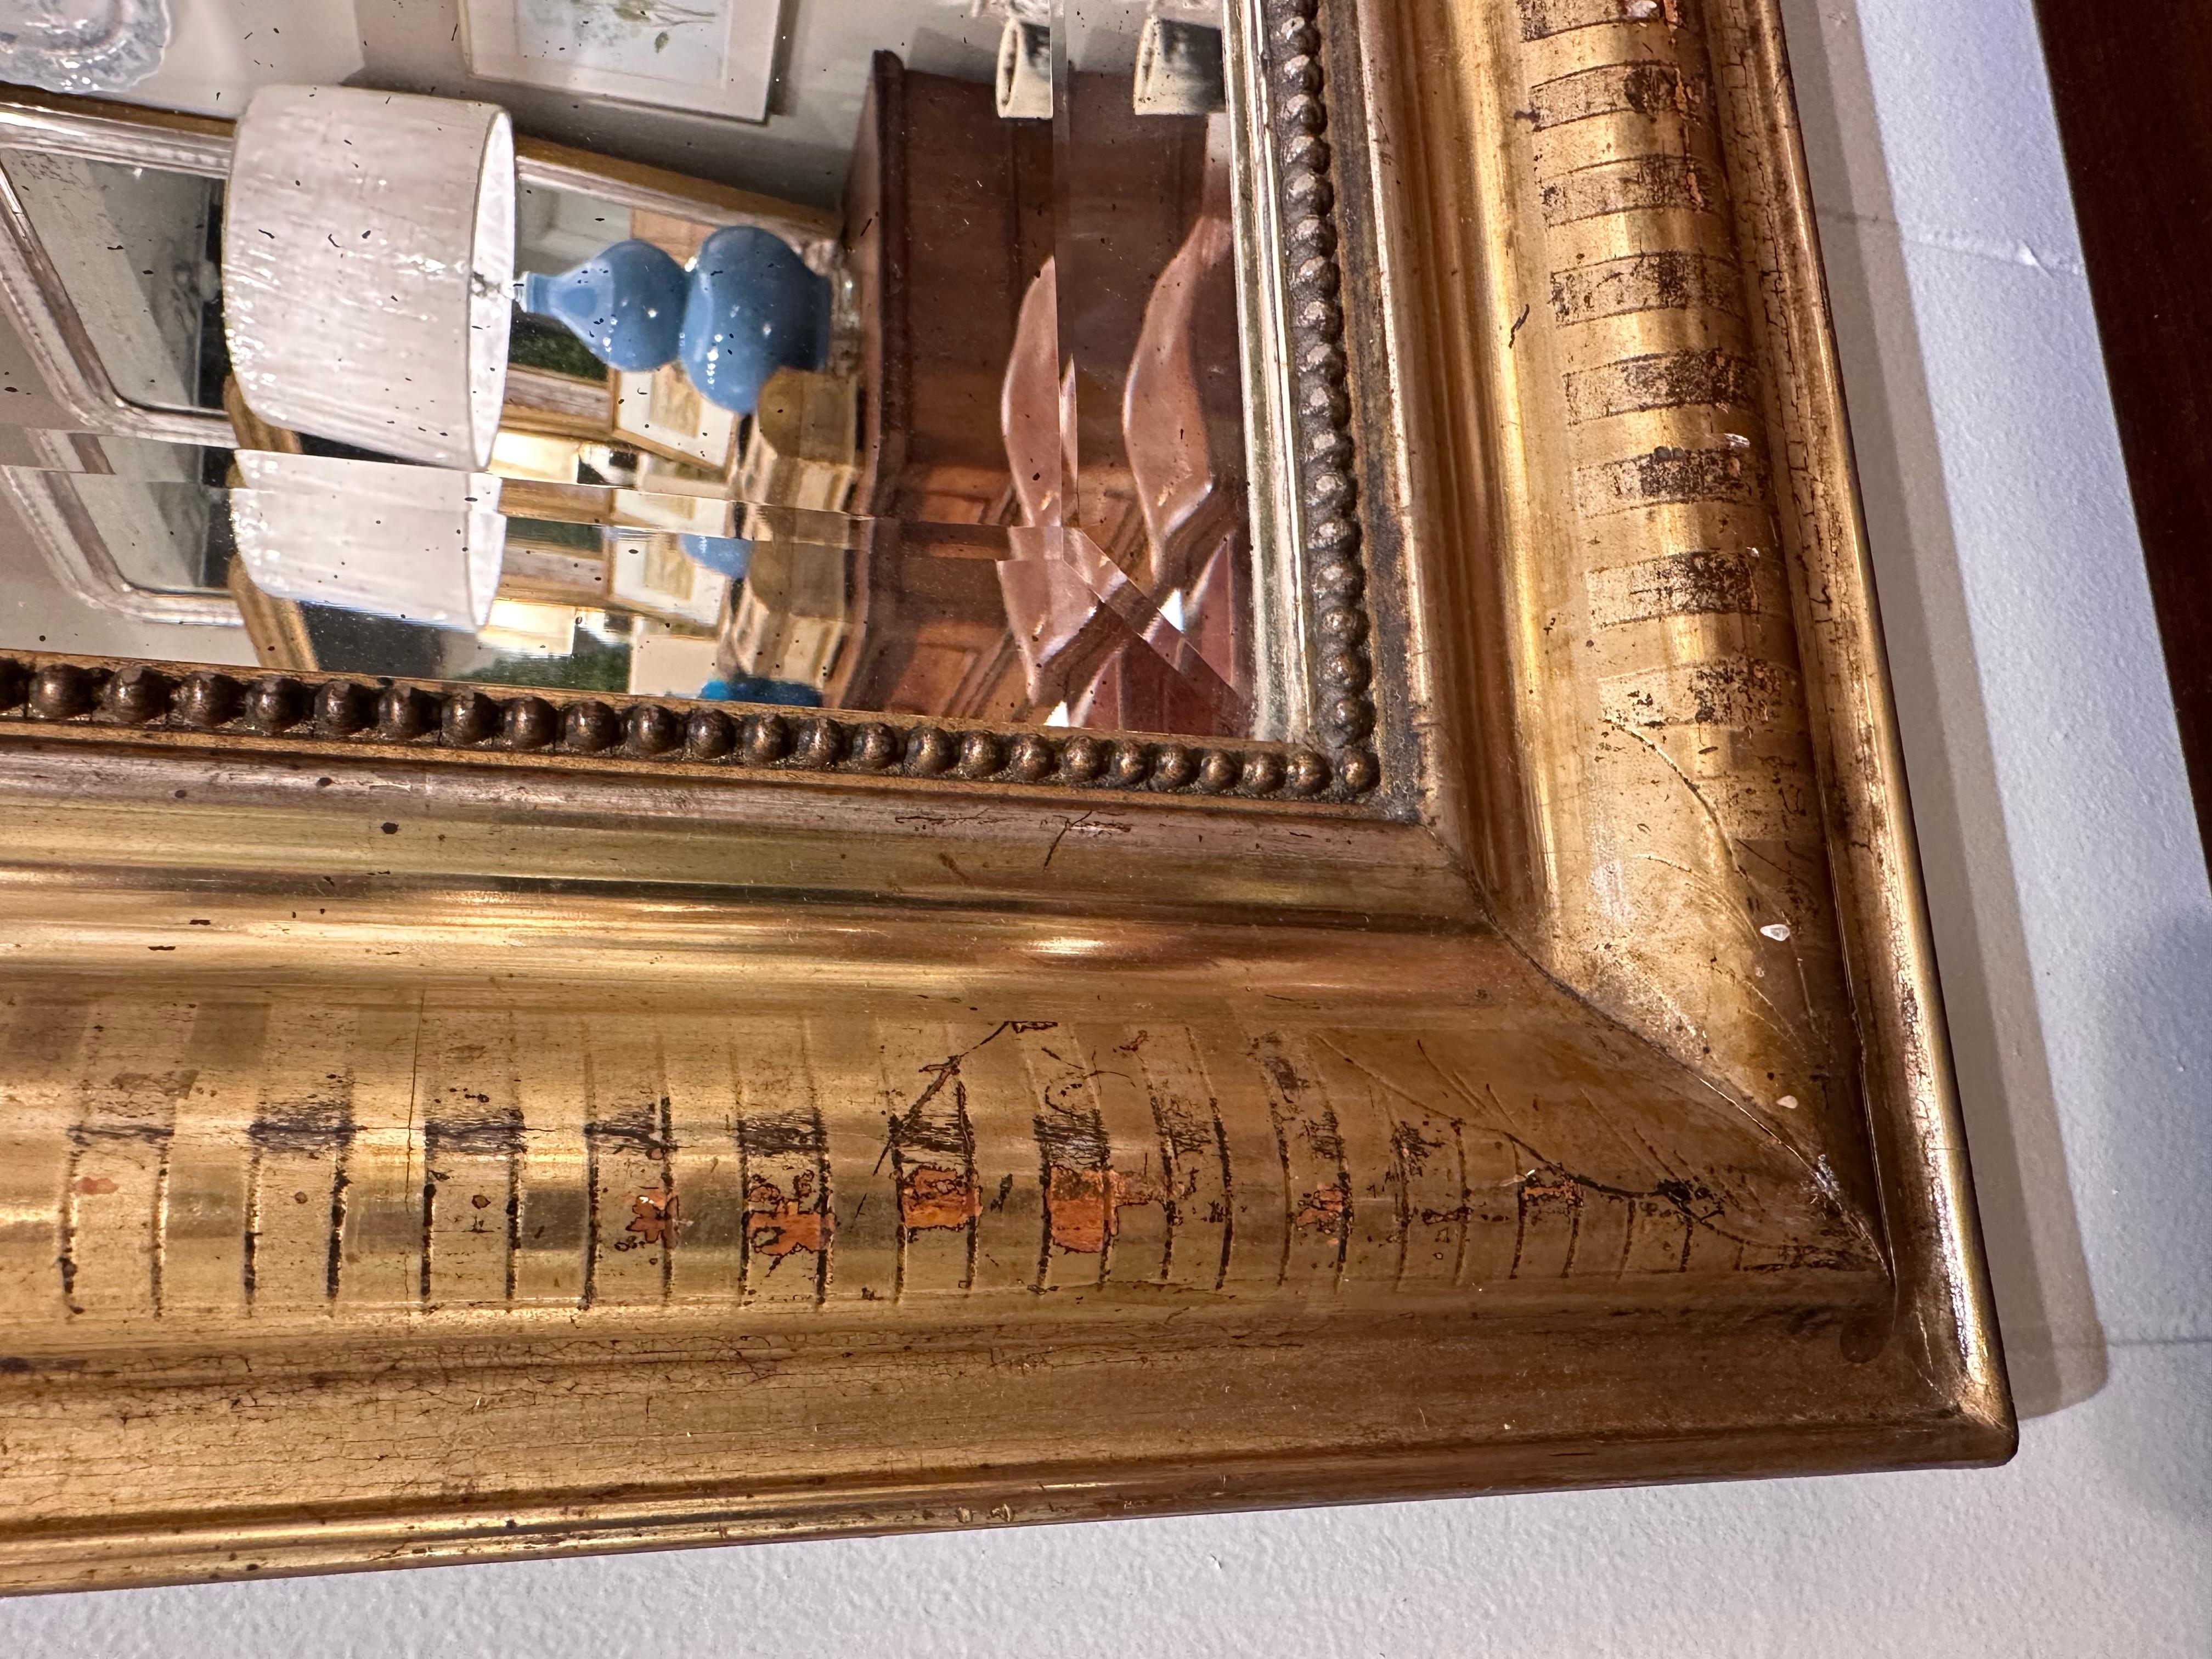 Dieser exquisite antike Louis-Philippe-Spiegel mit vergoldetem Finish verleiht jedem Raum mühelos zeitlosen Charme. Seine kunstvollen Details und sein klassisches Design machen ihn zu einem fesselnden Mittelpunkt, der Stil und Geschichte in einem